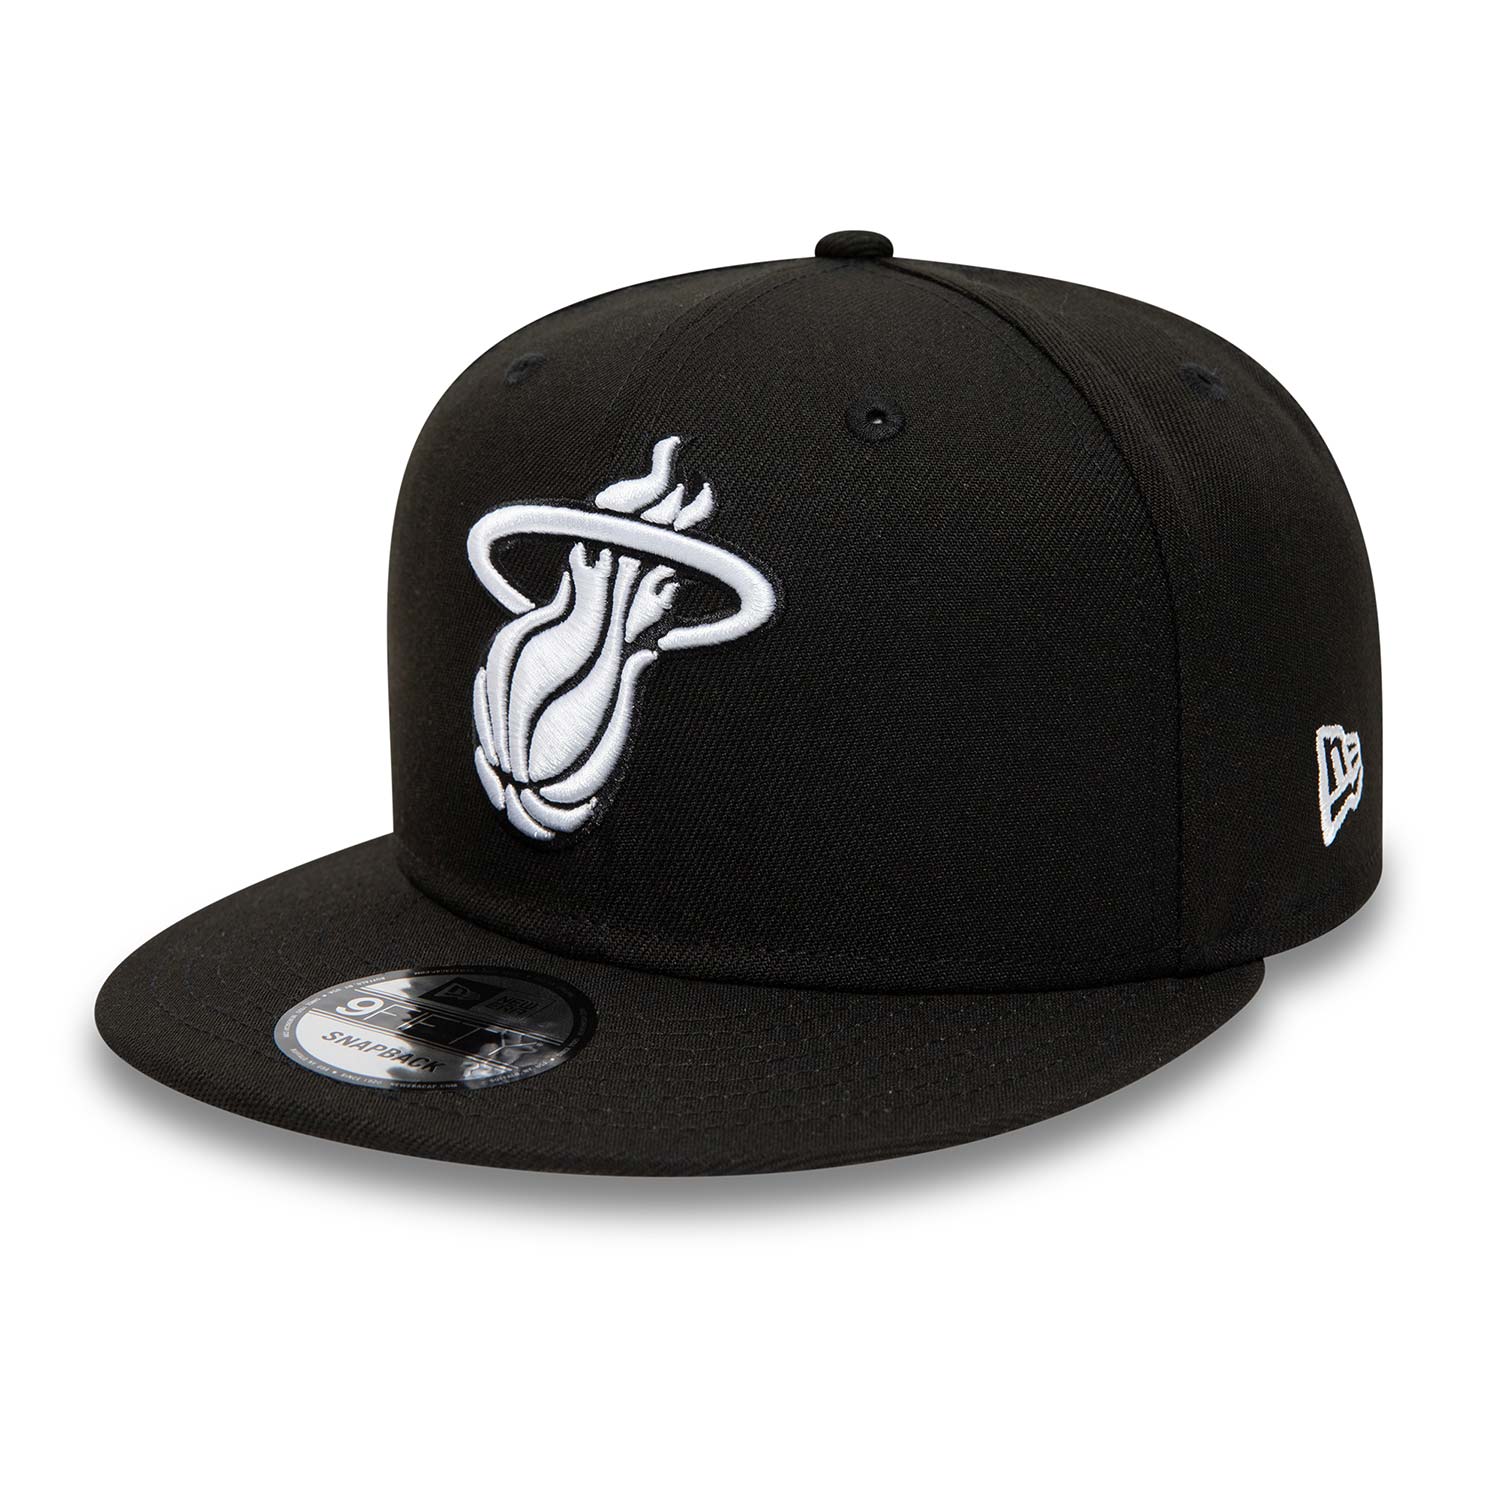 Miami Heat Black 9FIFTY Snapback Cap